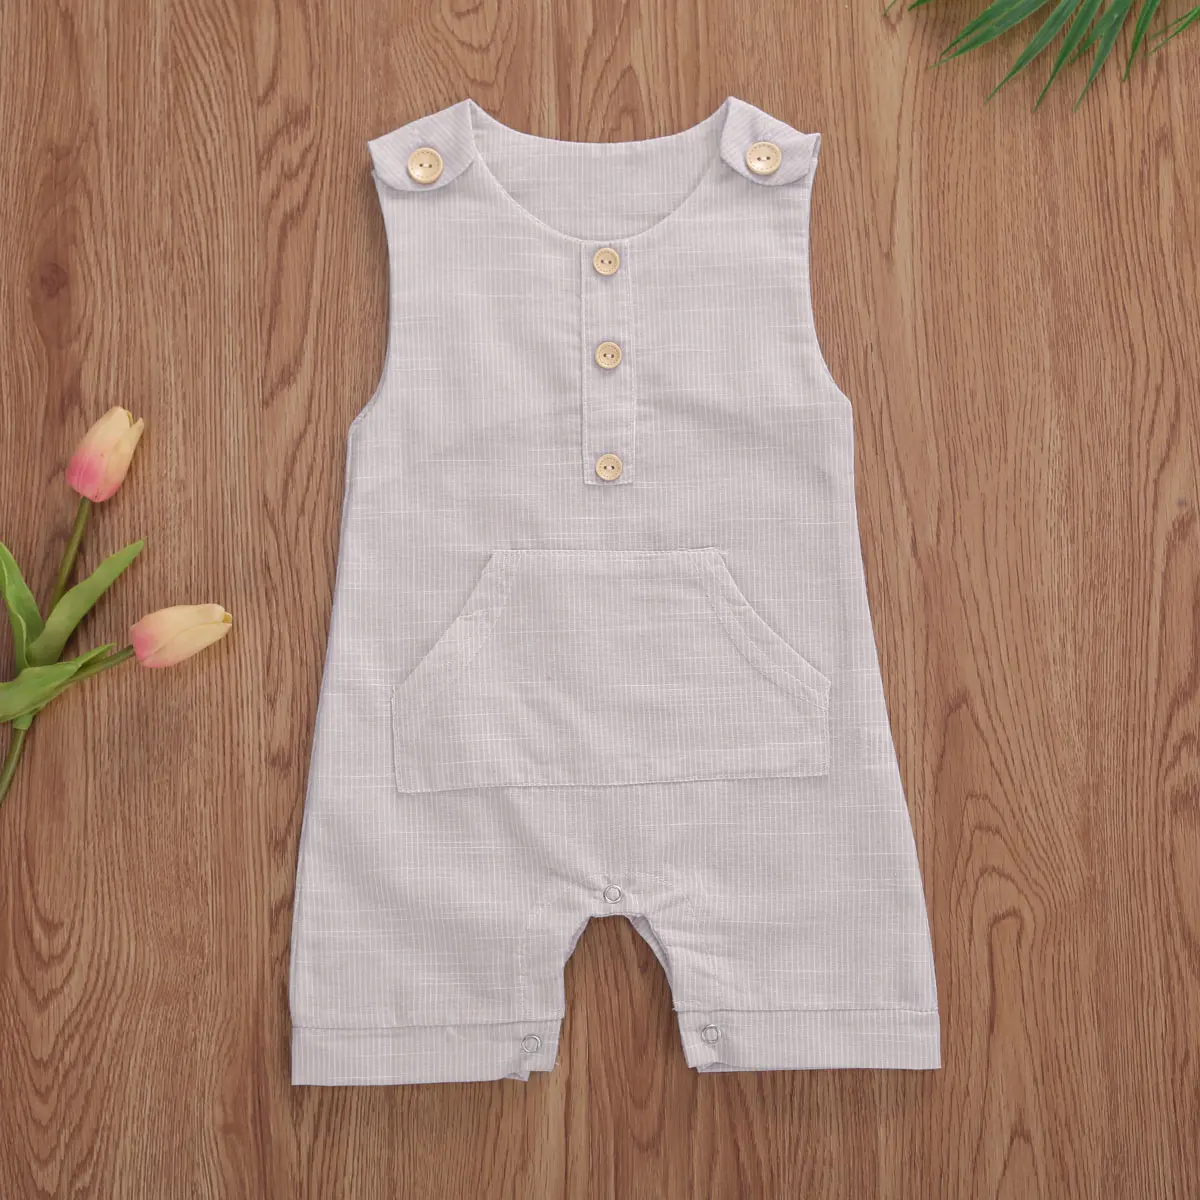 2020 התינוק קיץ בגדי התינוק הנולד בנים כפתורים פסים רומפר אופנה שרוולים רומפר כותנה פשתן סרבל - 2